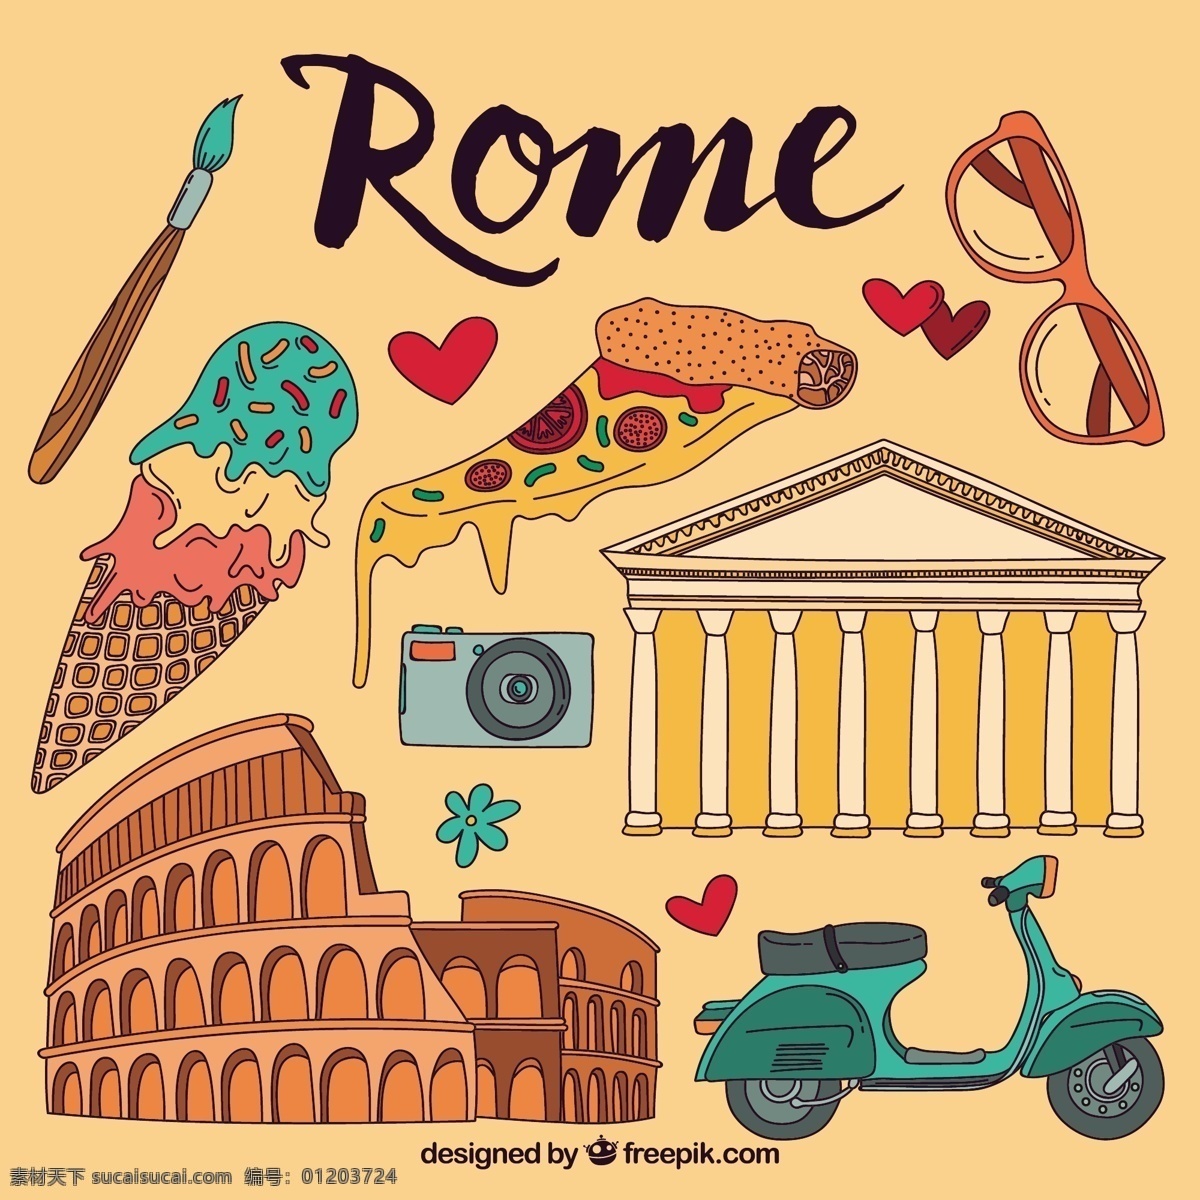 罗马元素插图 旅游 城市 比萨 绘画 意大利 插图 胡蜂 手工 罗马 奶油 抽纱 手绘 画报